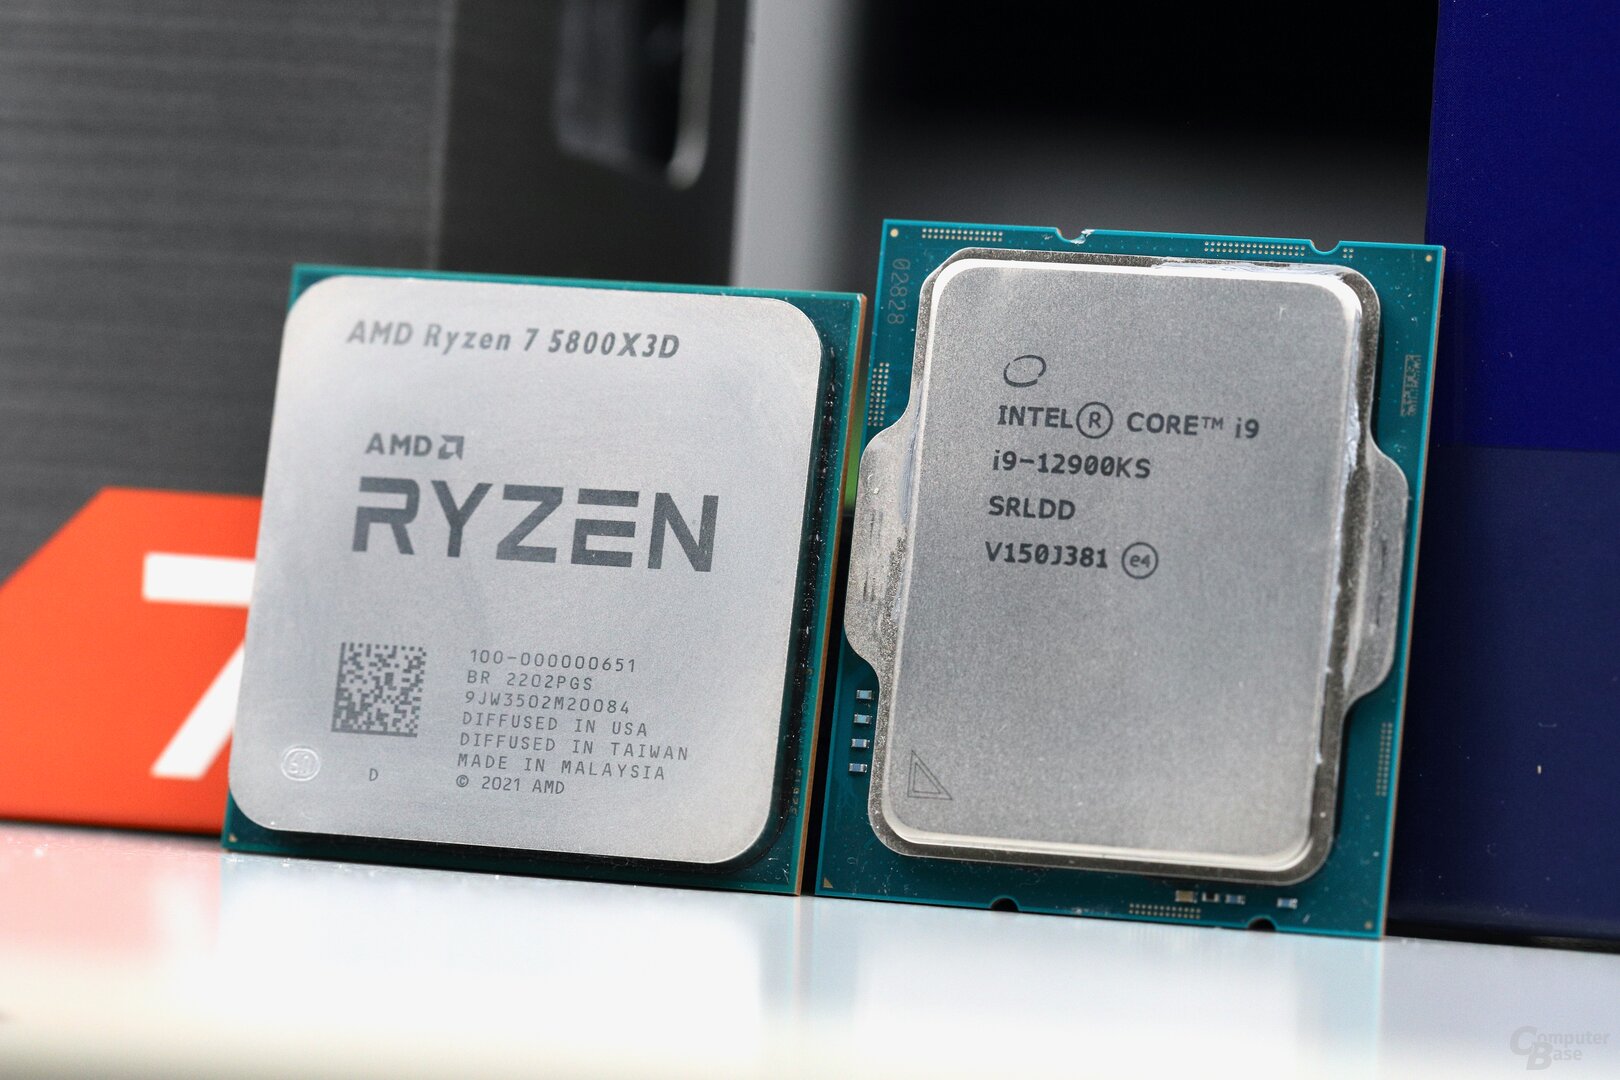 AMD Ryzen 7 5800X3D Review Roundup | VideoCardz.com